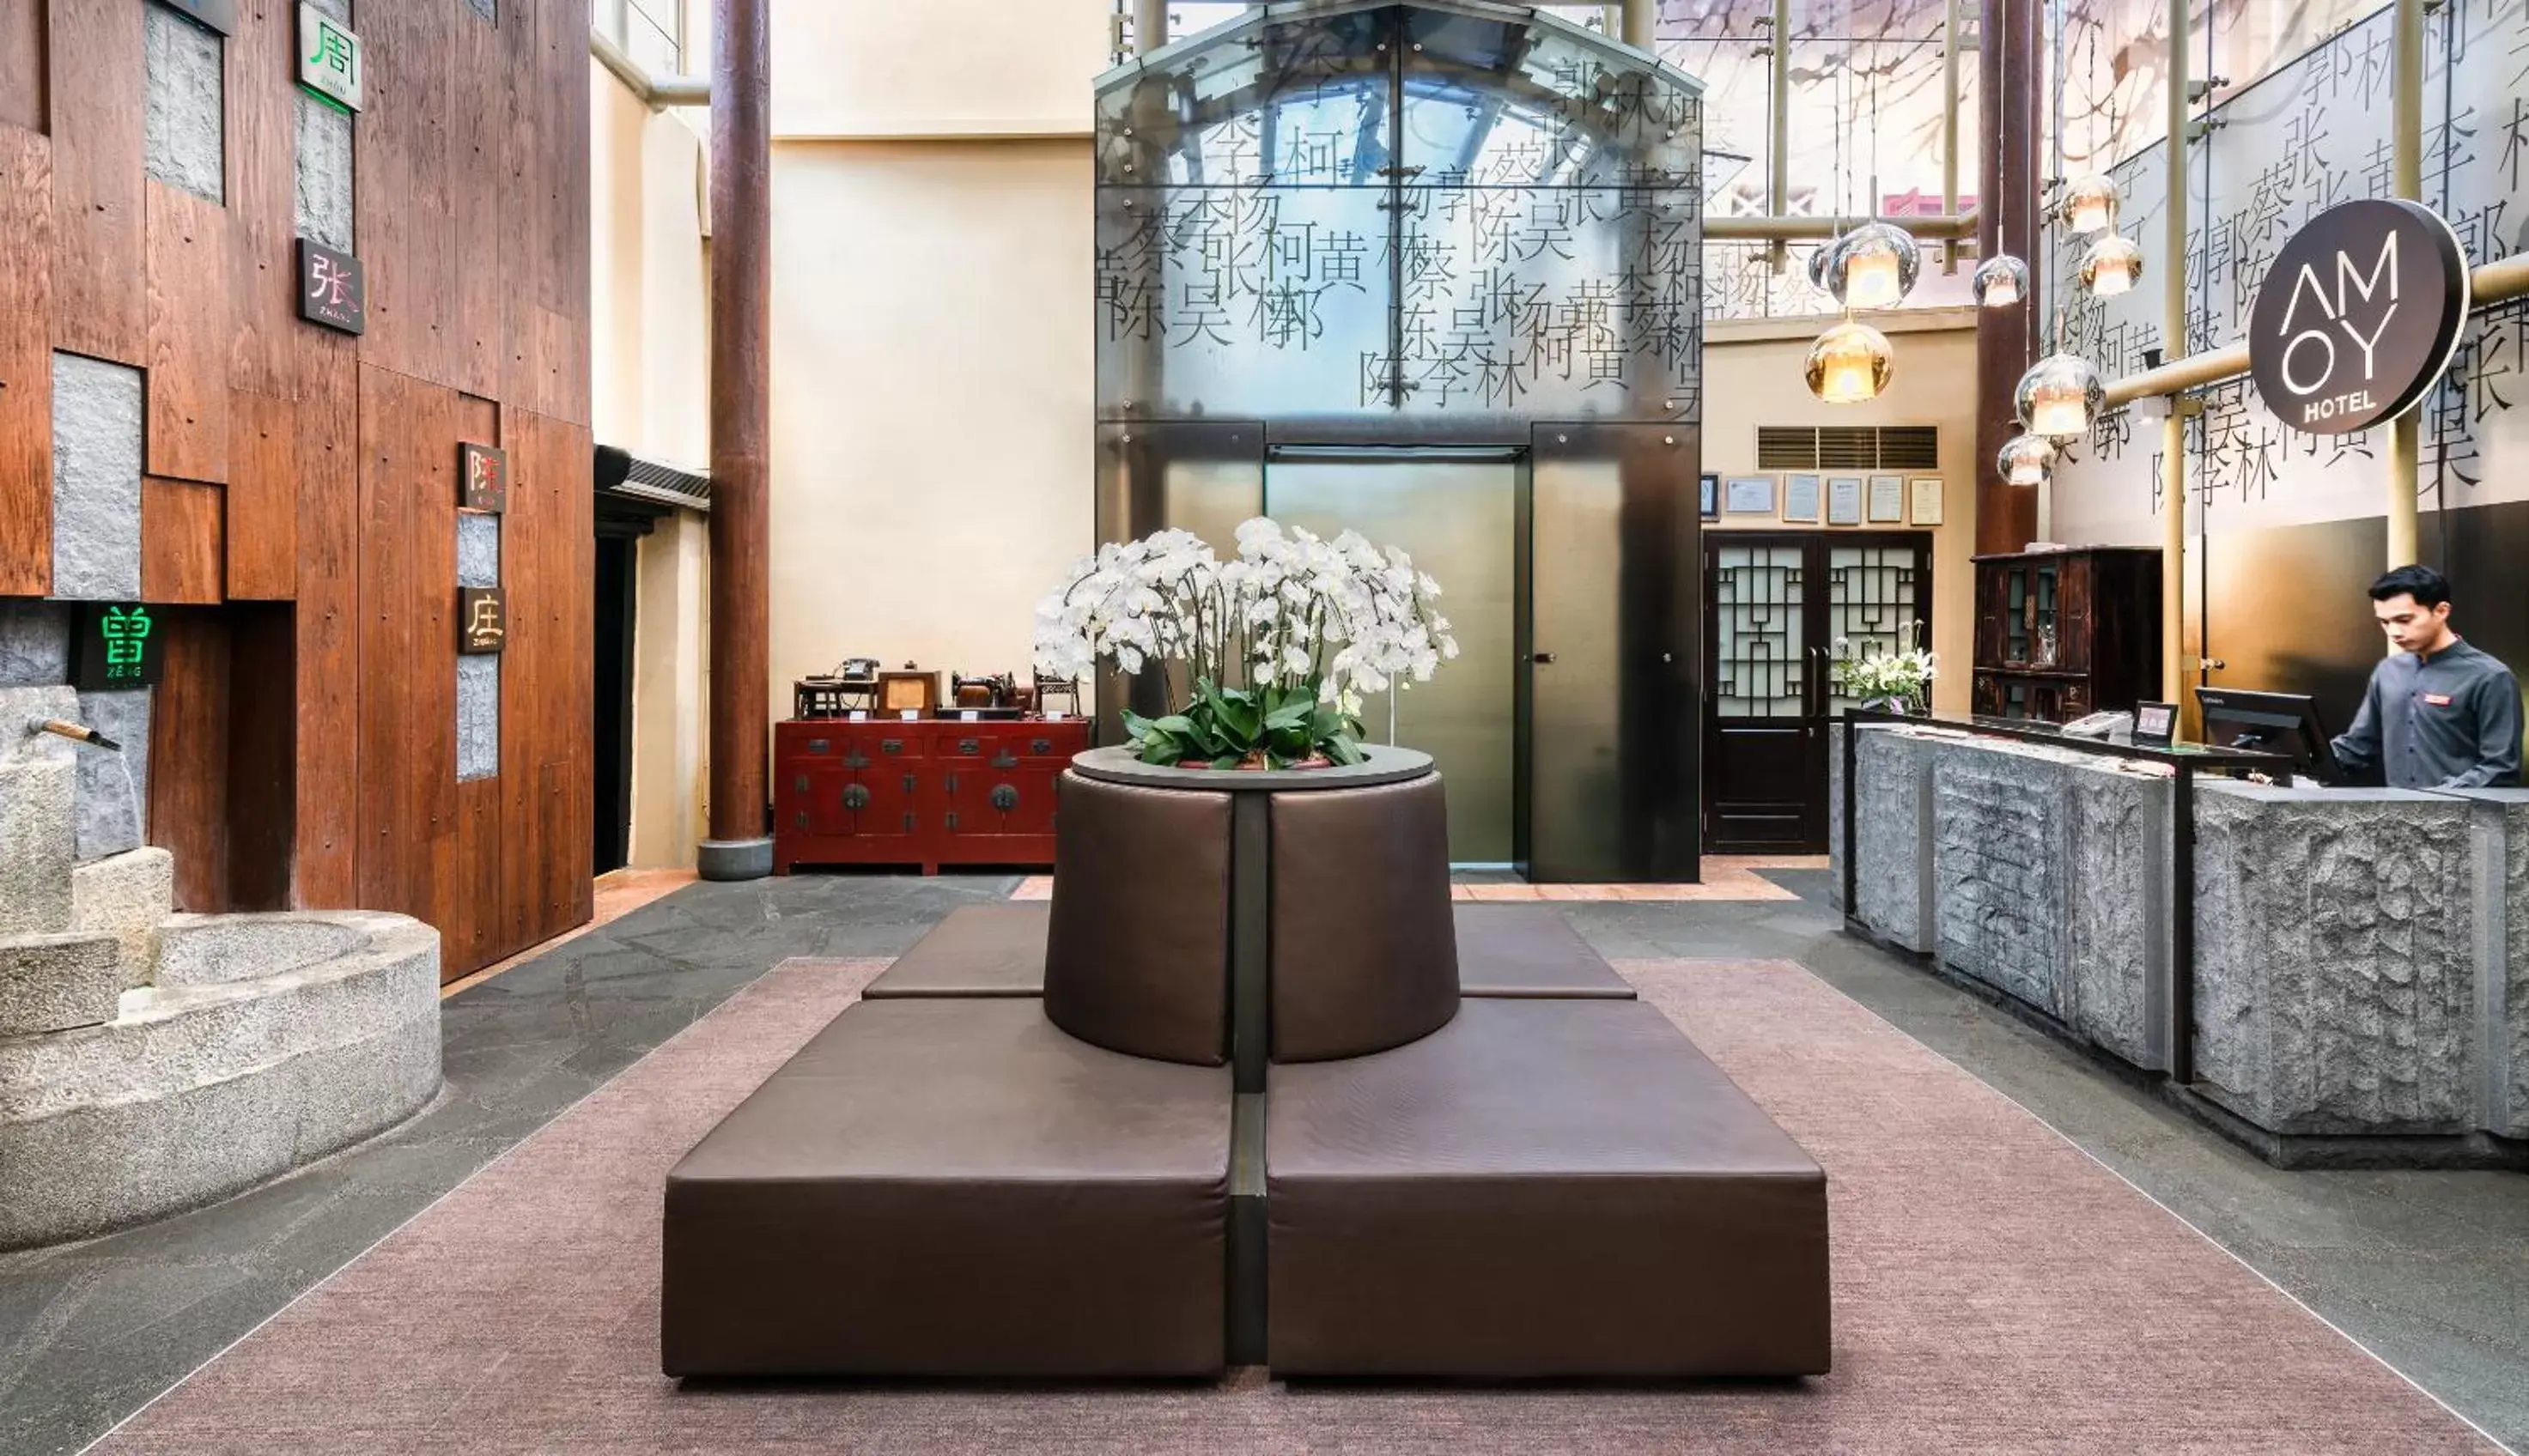 Lobby or reception, Lobby/Reception in AMOY by Far East Hospitality